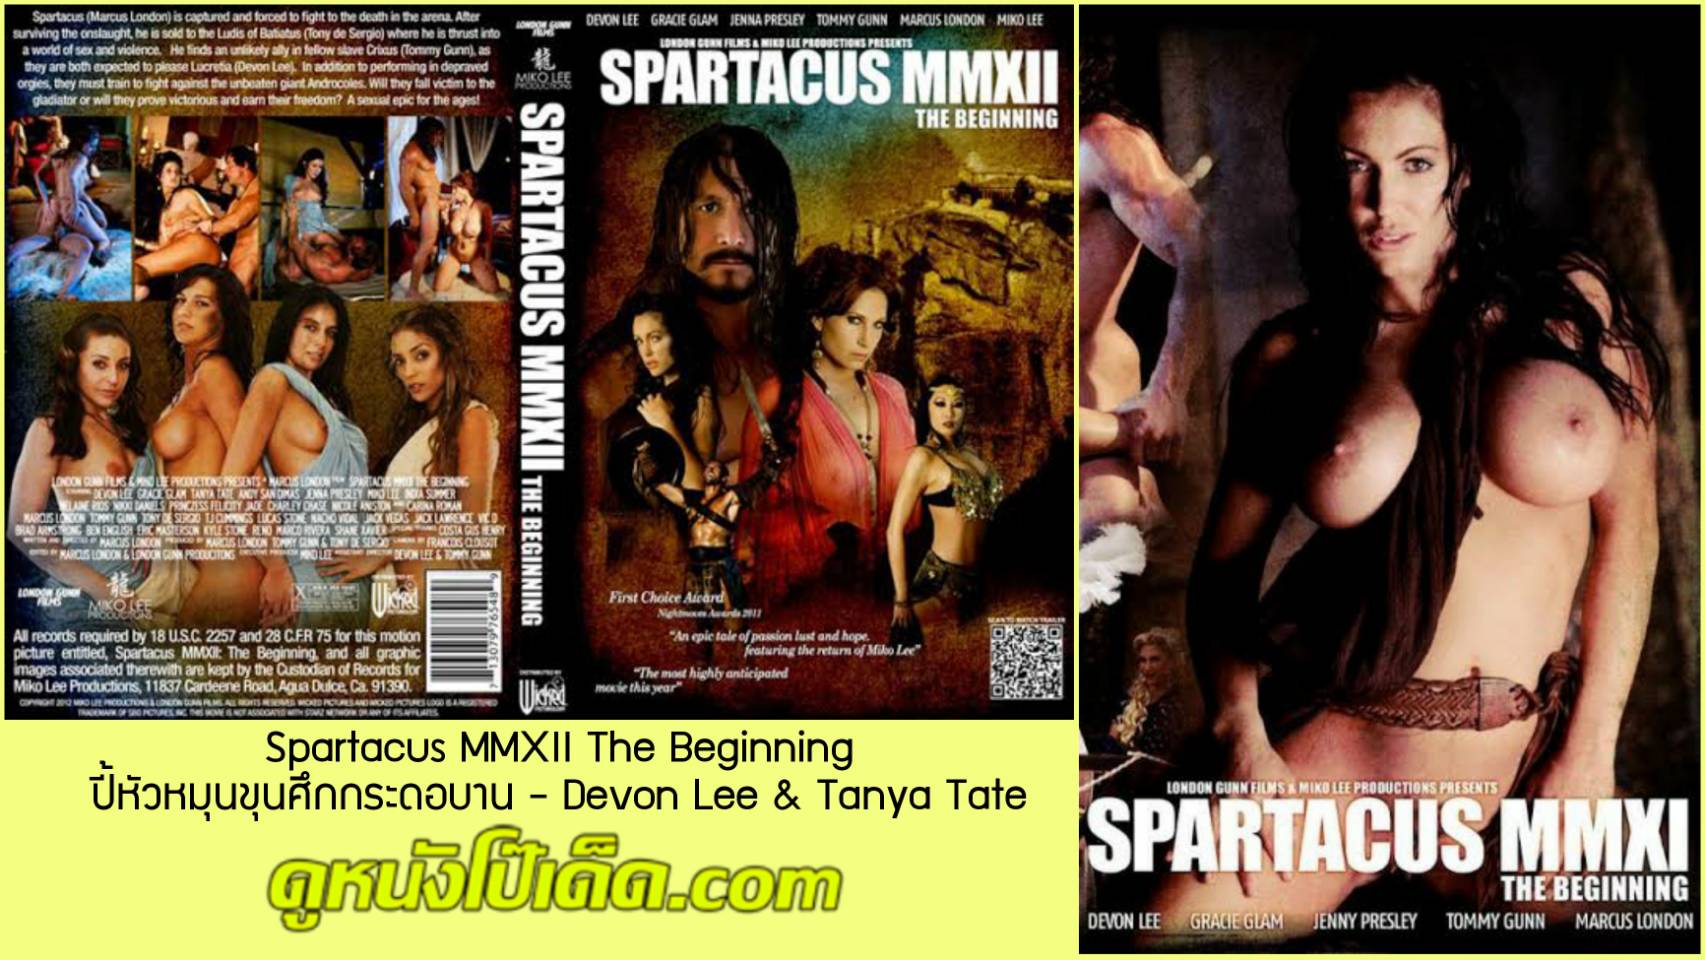 Spartacus Porn (เอวีซับไทย) หนังโป๊ฝรั่งแนวล้อเลียน เดวอน ลี และ ทันย่า เทต สองนายหญิงมั่วเซ็กส์กับทาสควยใหญ่ Devon Lee & Tanya Tate แก้ผ้าเล่นฉากสวิงกิ้งแอ็คชั่นมันๆ ในเรื่องสปาร์ทาคัสฉบับล้อเลียน ปี้หัวหมุน ขุนศึกกระดอบาน R18+